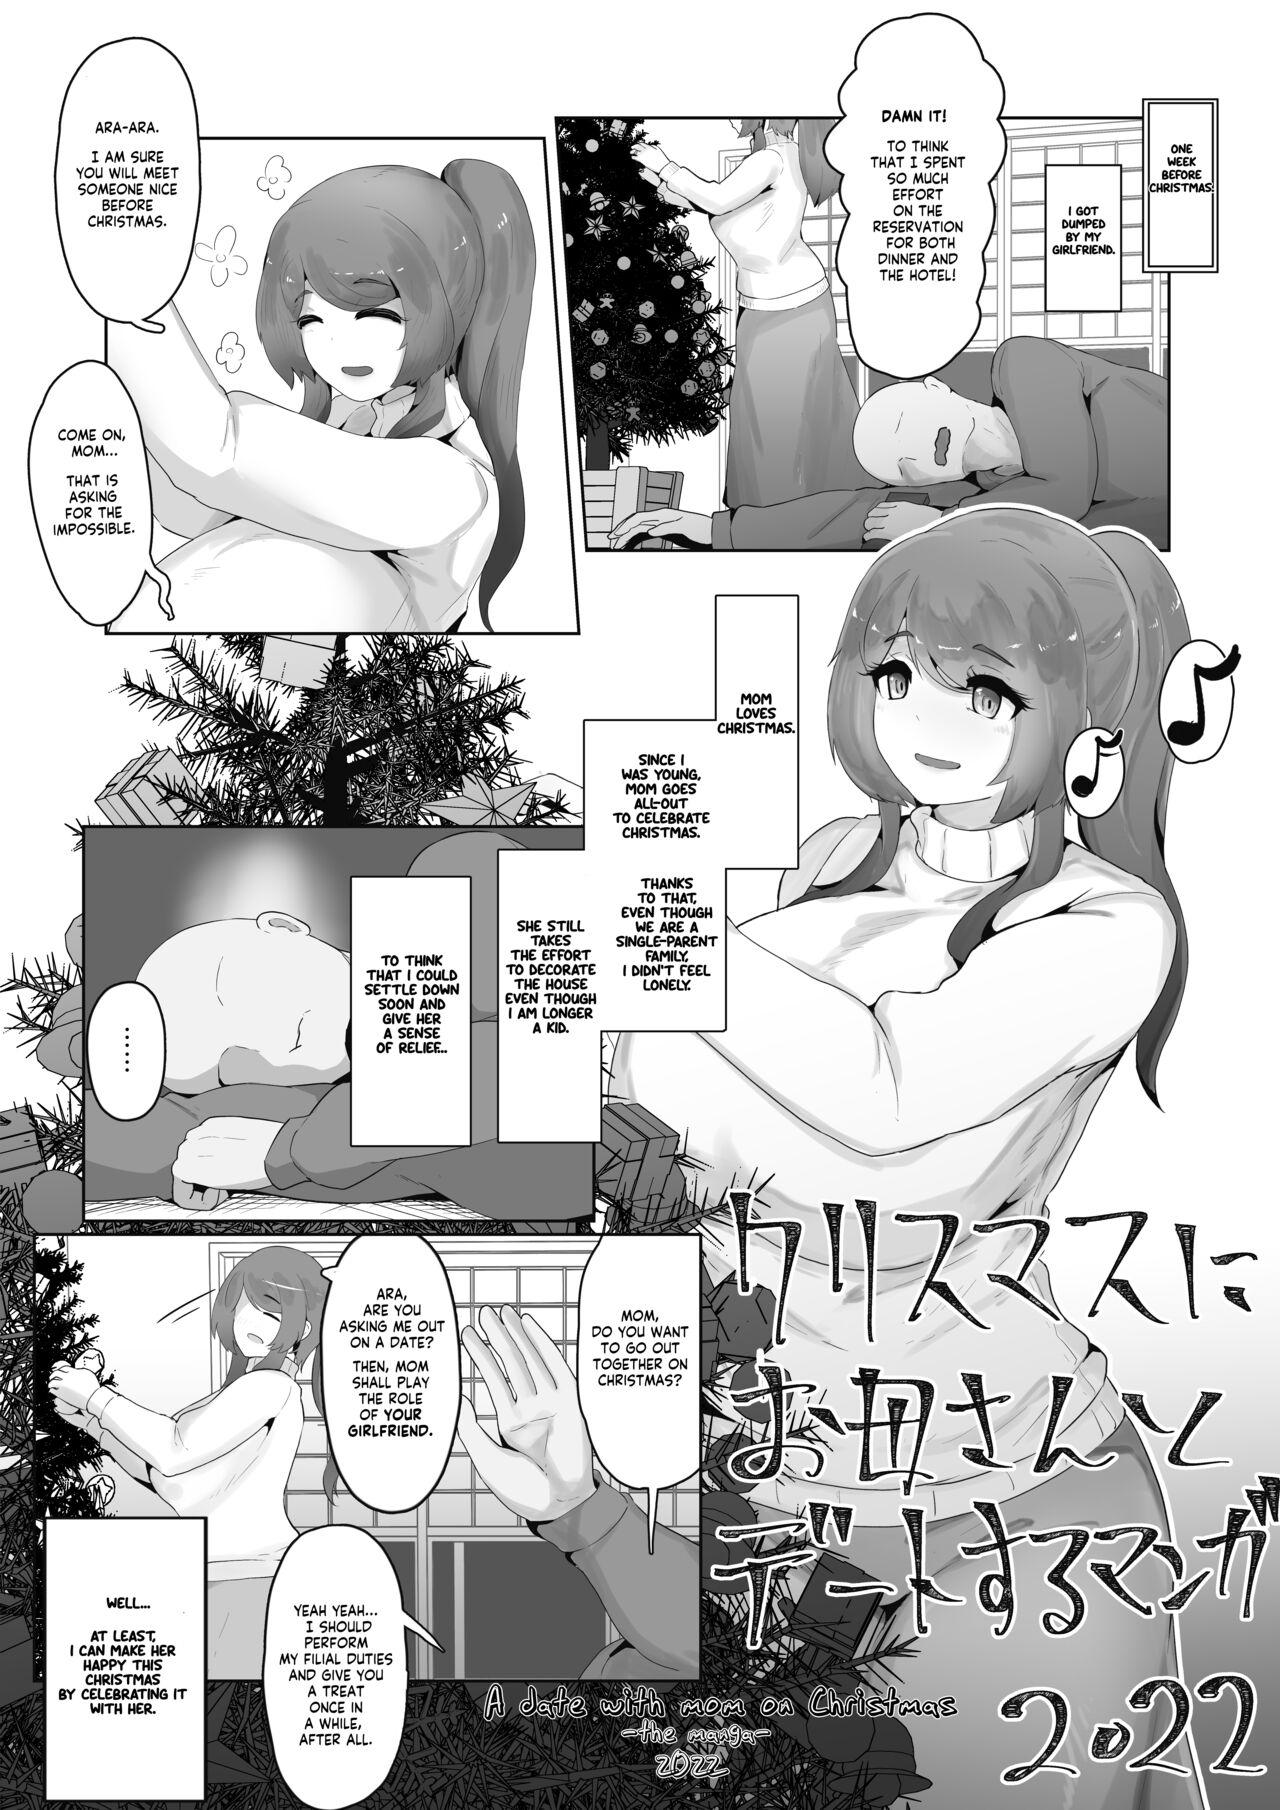 Coroa Christmas Boshi Kan 2022 Wanking - Page 1